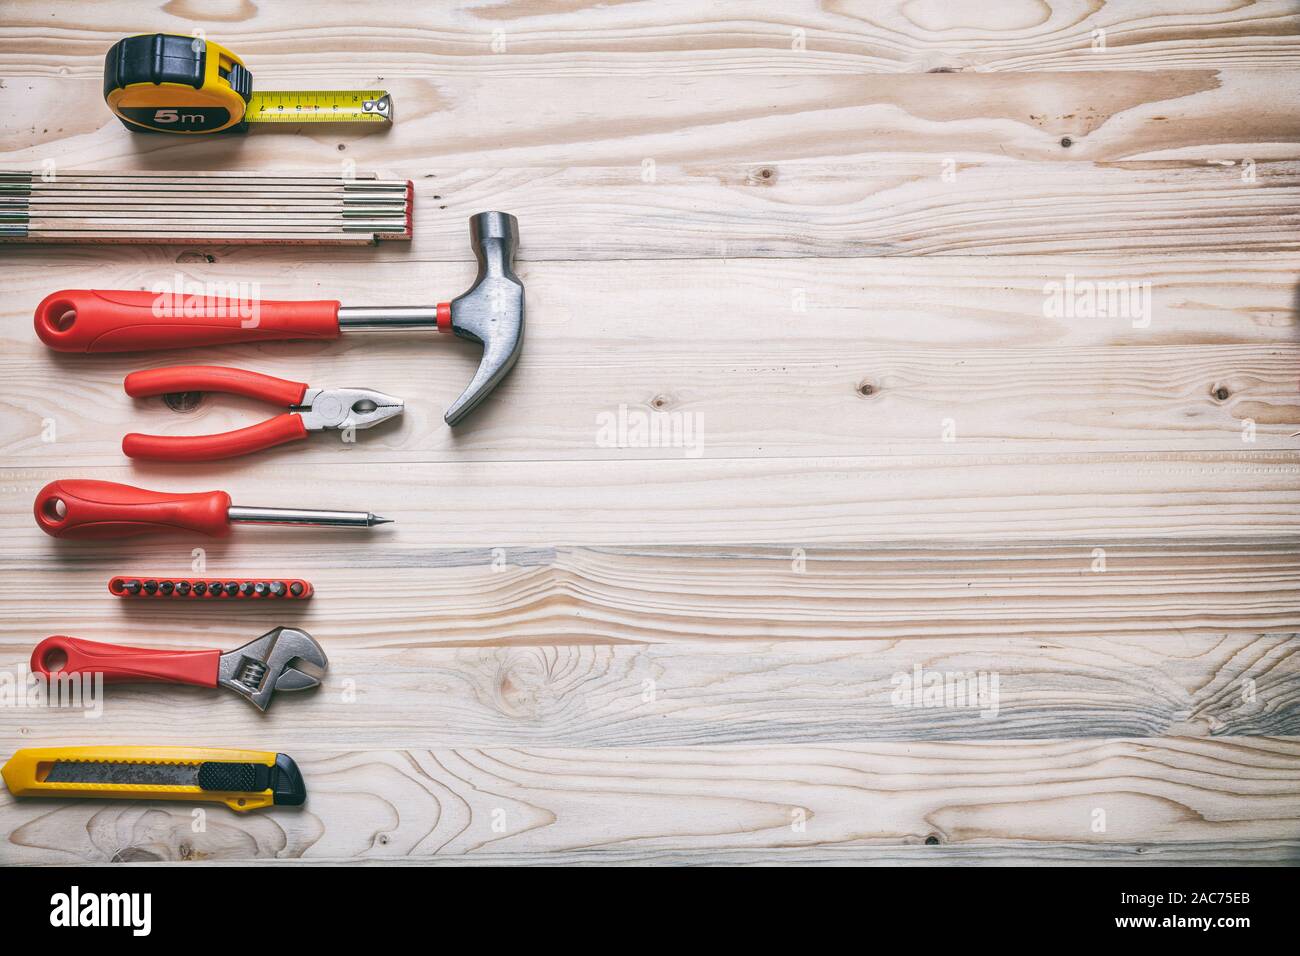 Bricolage, réparation, service concept. Ensemble d'outils à main de couleur rouge et jaune sur bois, copie espace, vue du dessus. Banque D'Images